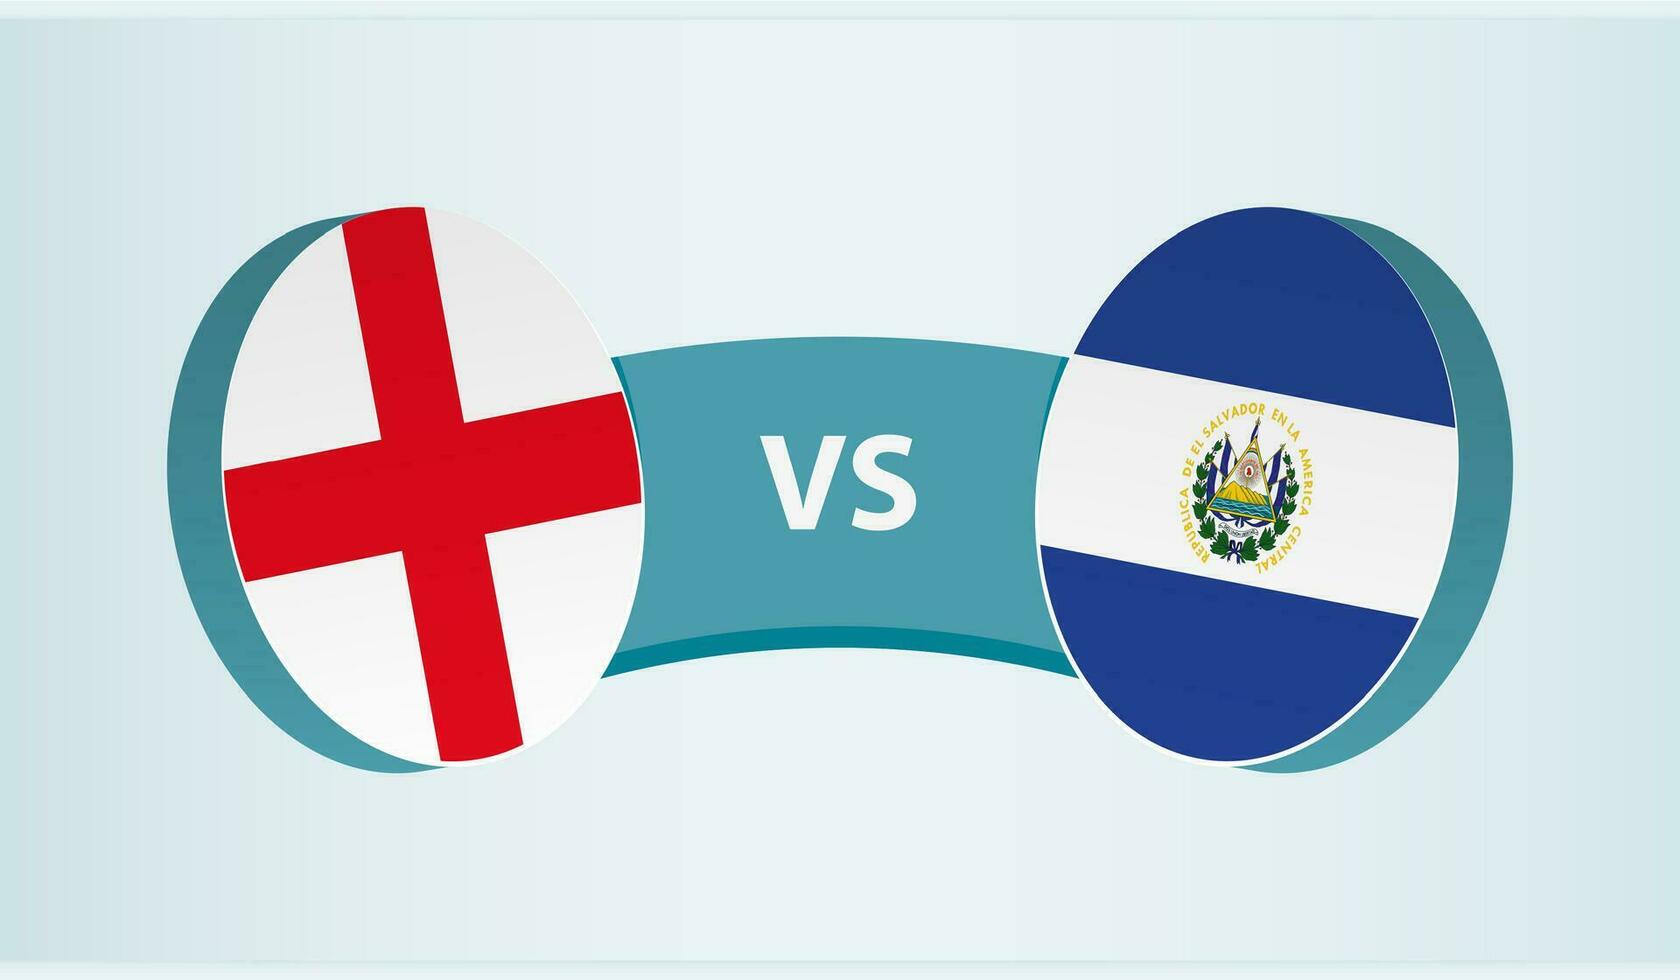 England versus El Salvador, team sports competition concept. vector